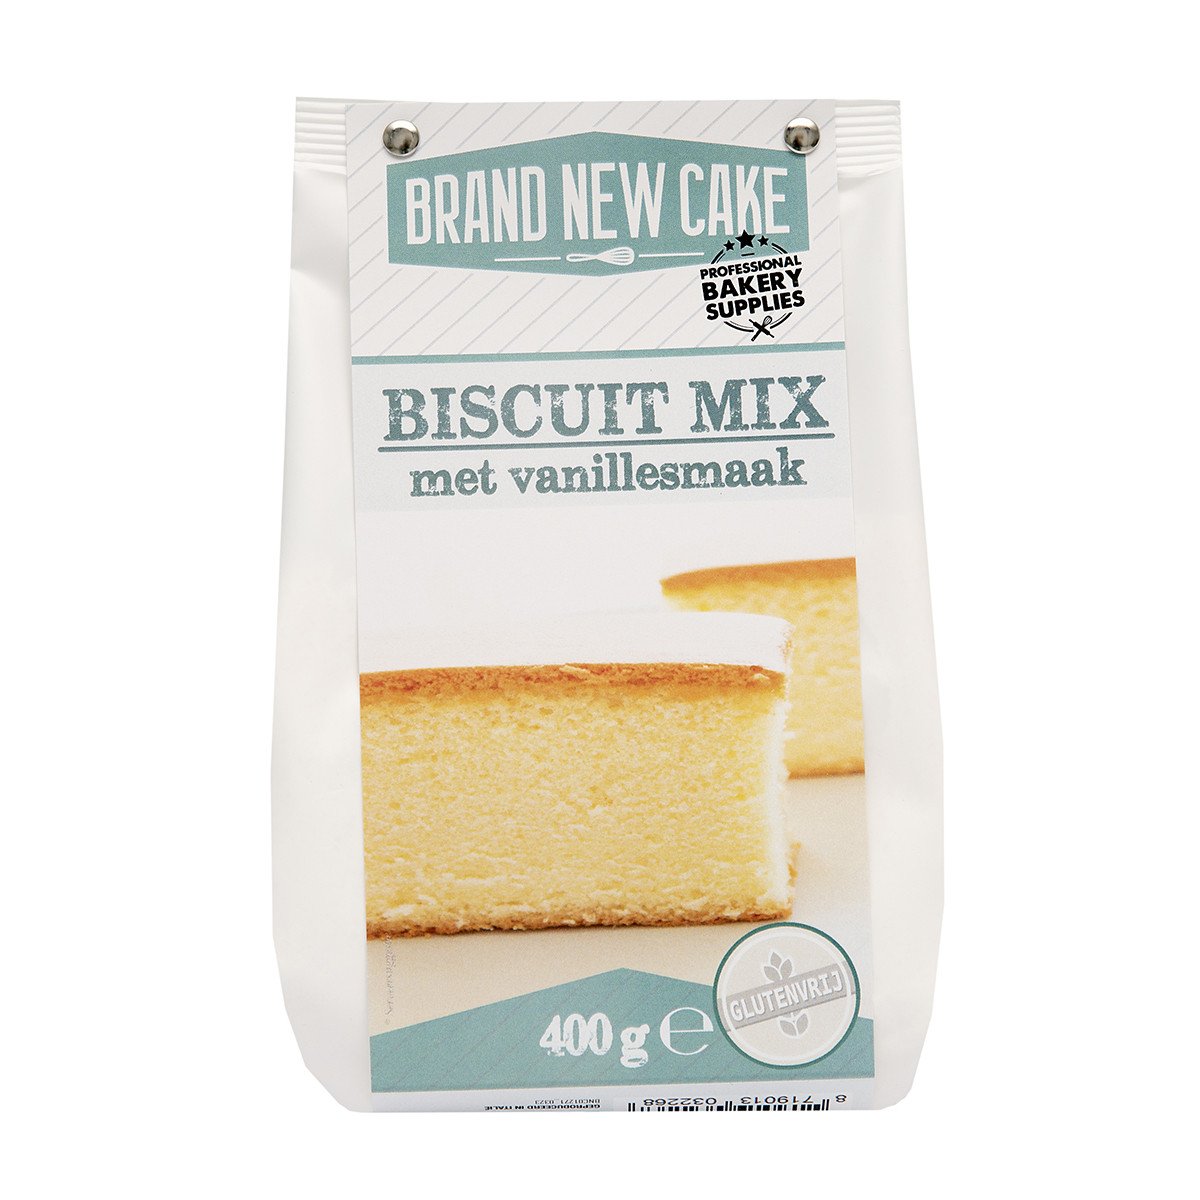 BrandNewCake Biscuit mix 400g. Gluten-free